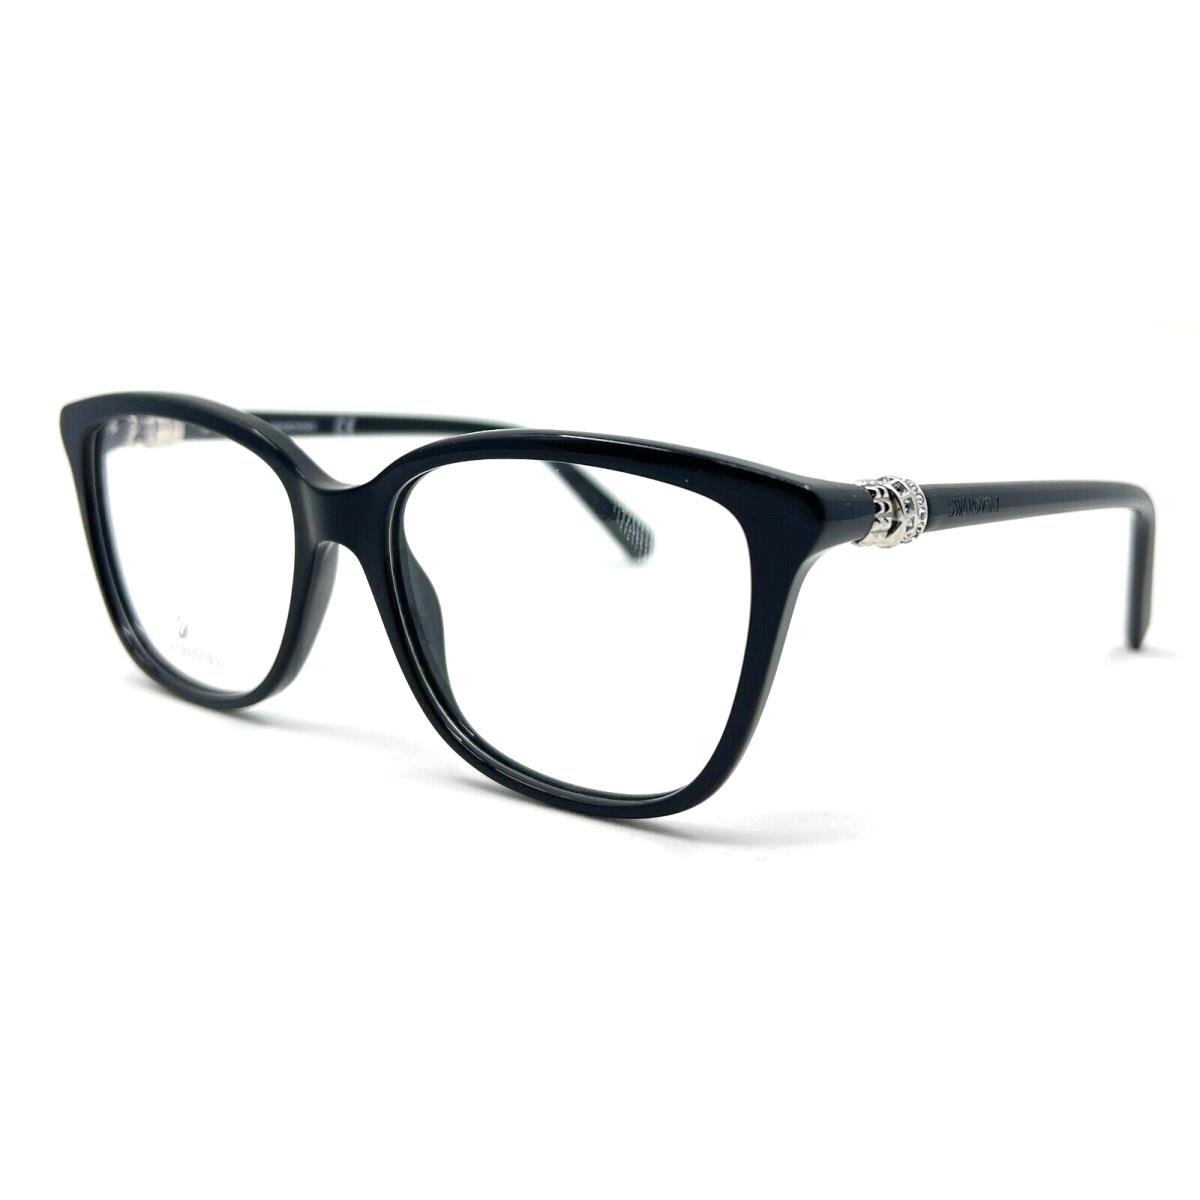 Swarovski - SK5242 001 52/15/140 - Black - Eyeglasses Case